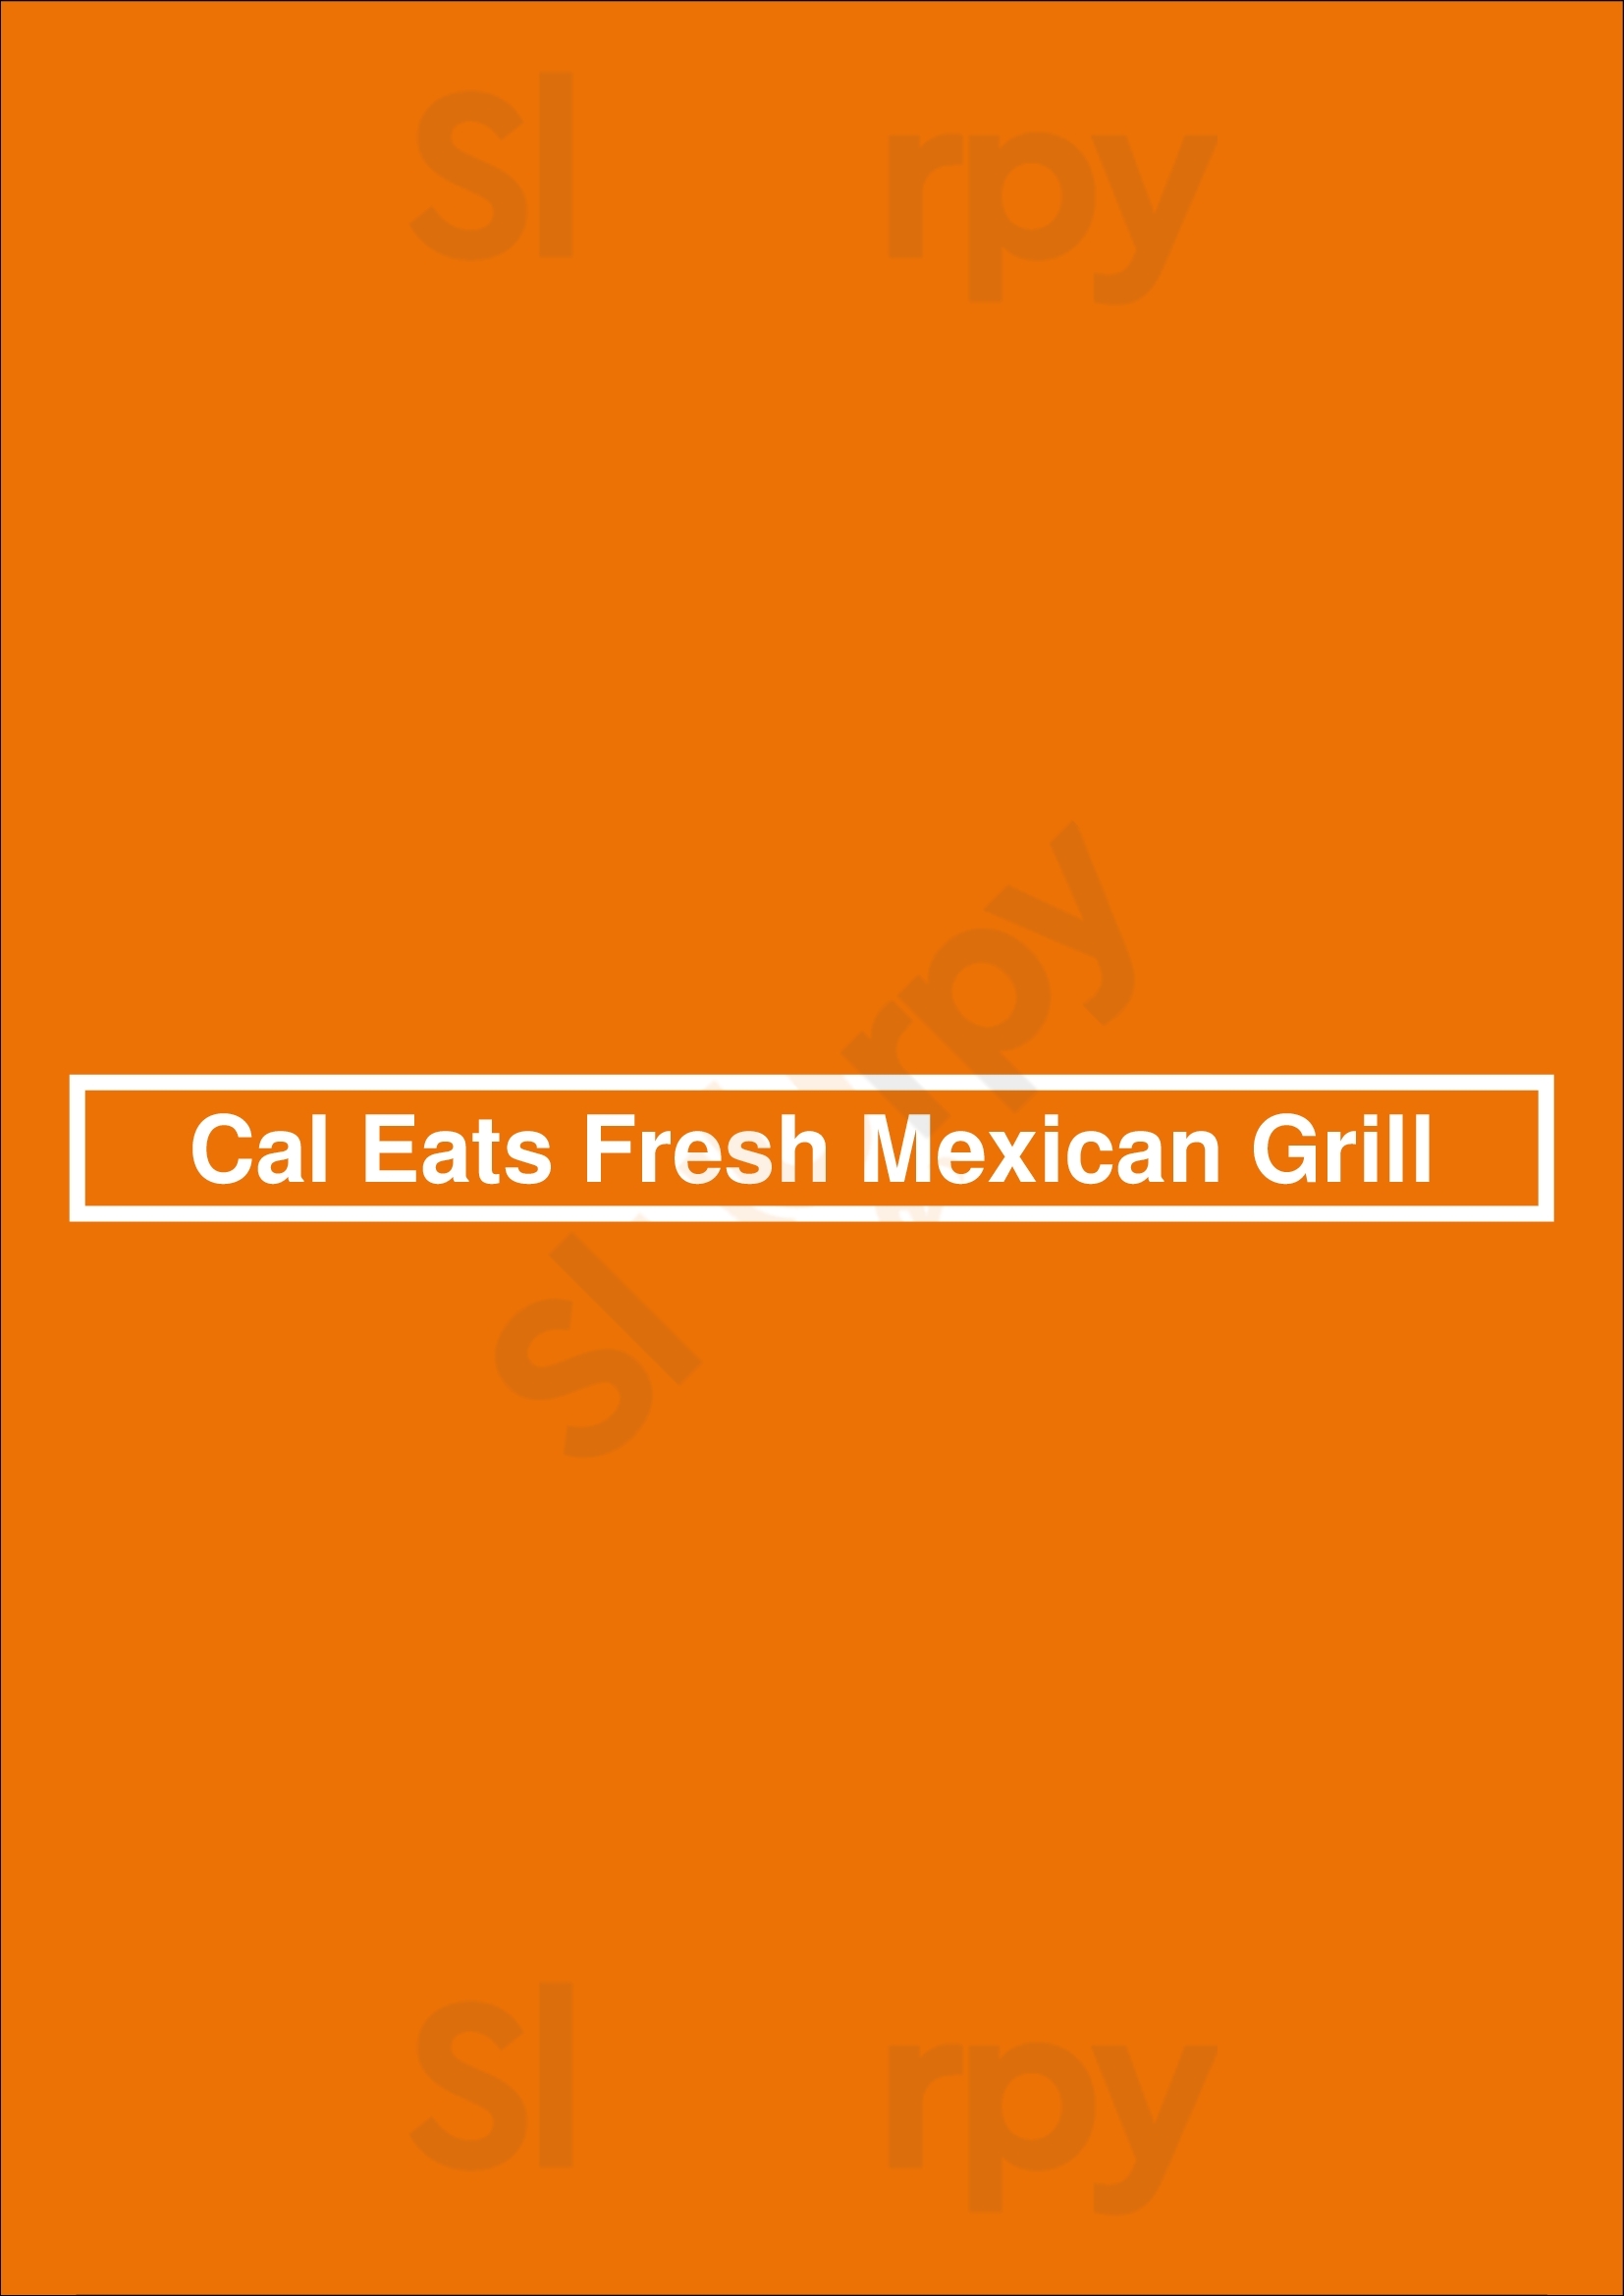 Cal Eats Fresh Mexican Grill Newark Menu - 1